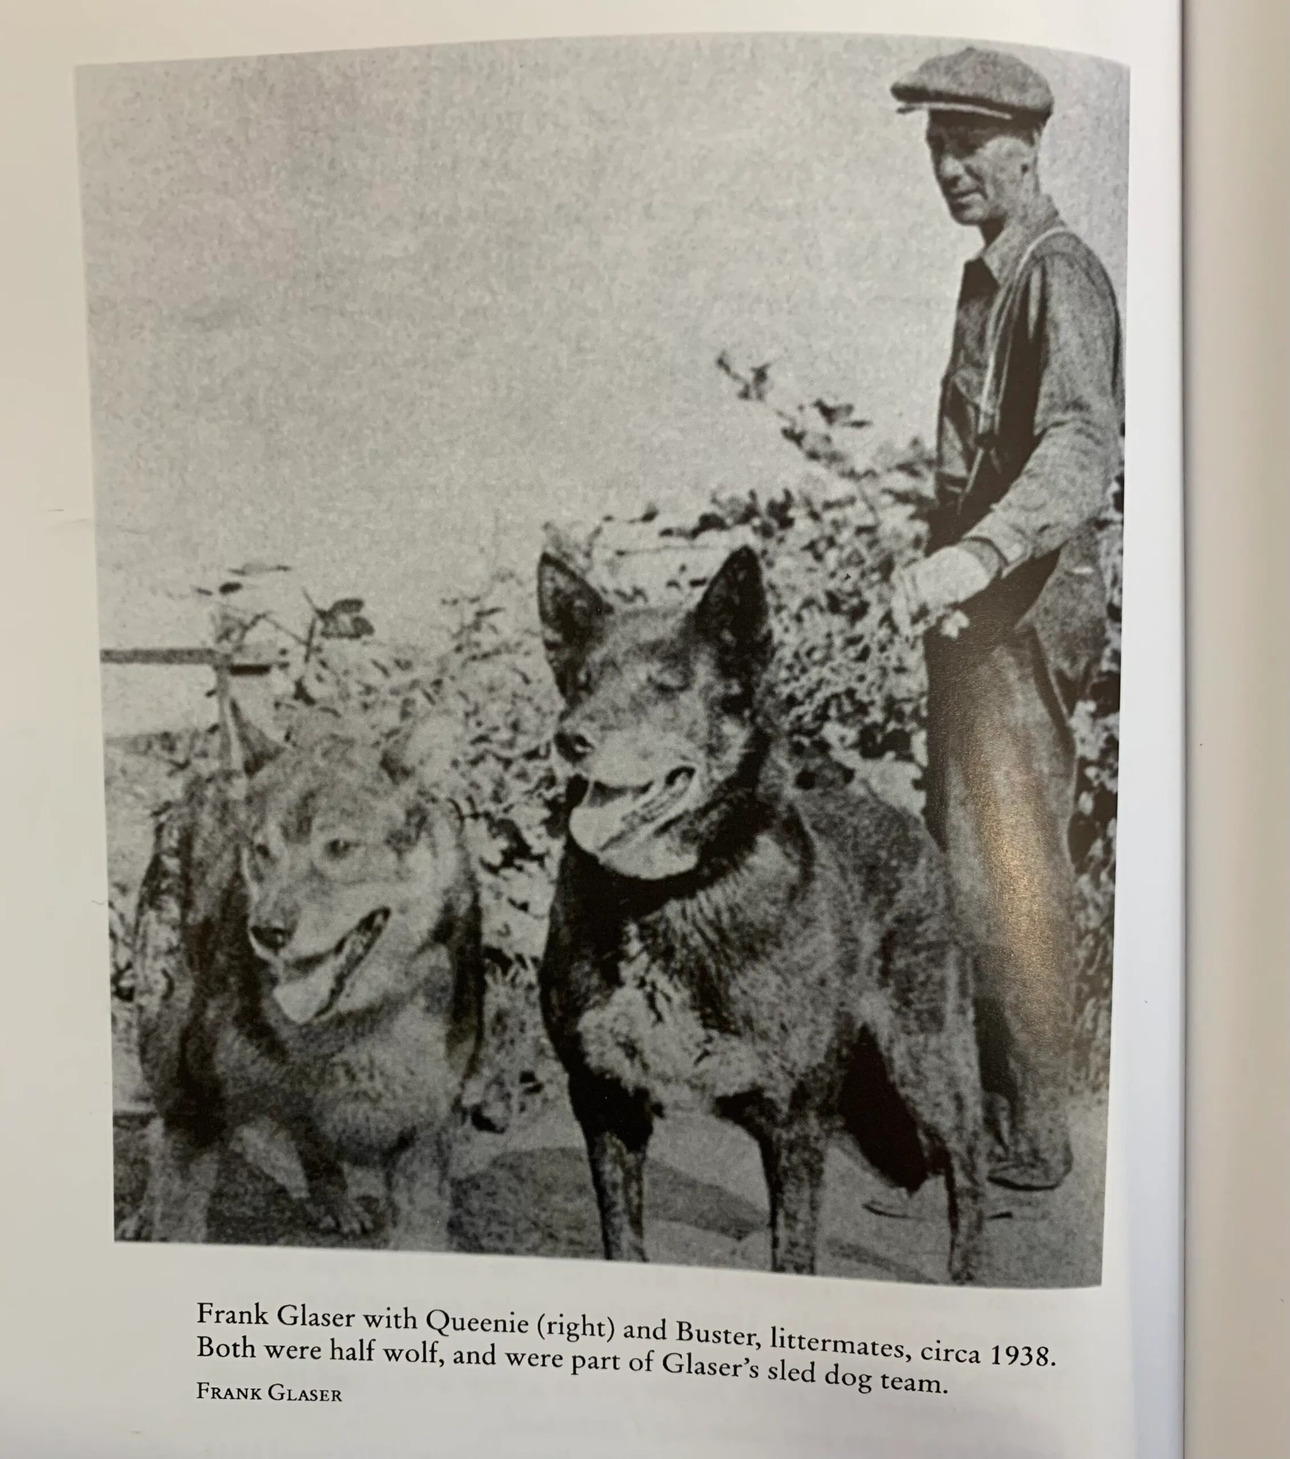 Изображение Фрэнк Глейзер изображен с Куини (собака справа) и одним из ее однопометников через несколько лет после того, как произошла эта история. Фото из журнала Outdoor Life за май 1954 года 